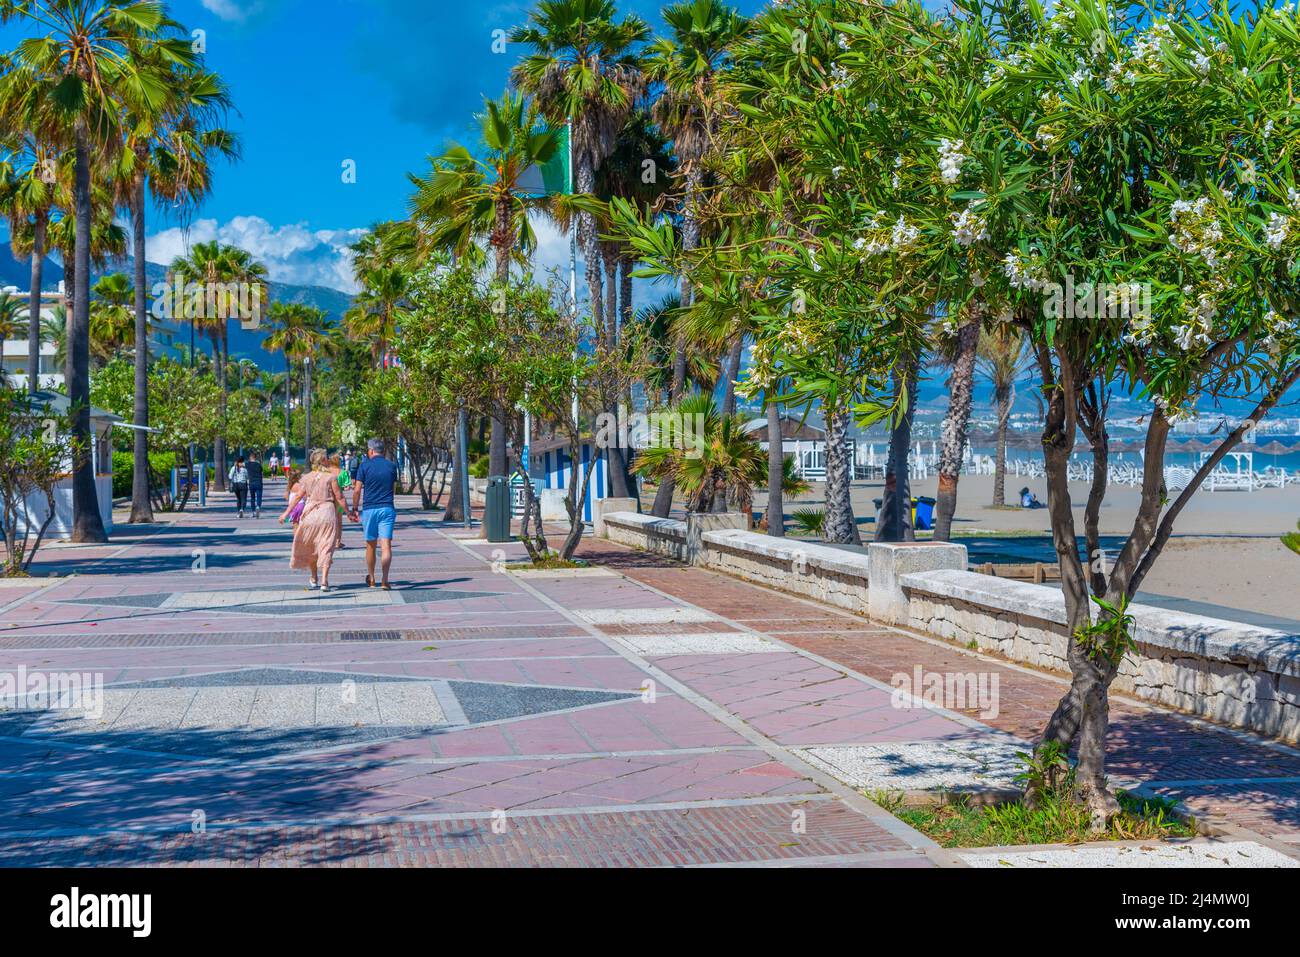 Marbella, Spanien, 23. Mai 2021: An einer Strandpromenade in Marbella, Spanien, schlendern die Menschen Stockfoto